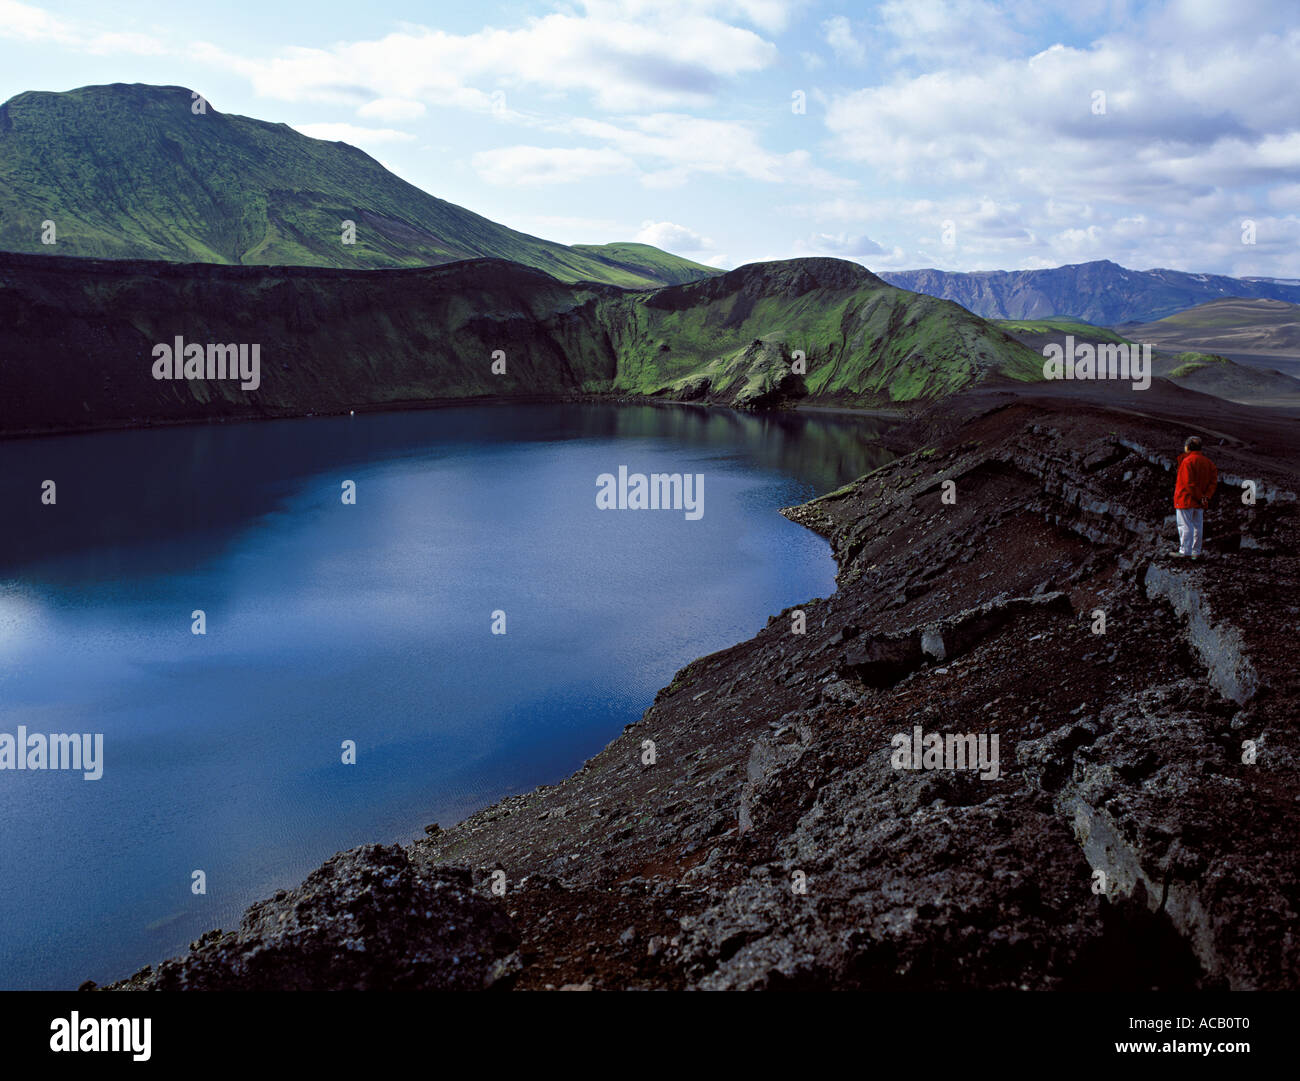 Lake dans un ancien cratère, près de Landmannalaugar Islande Banque D'Images